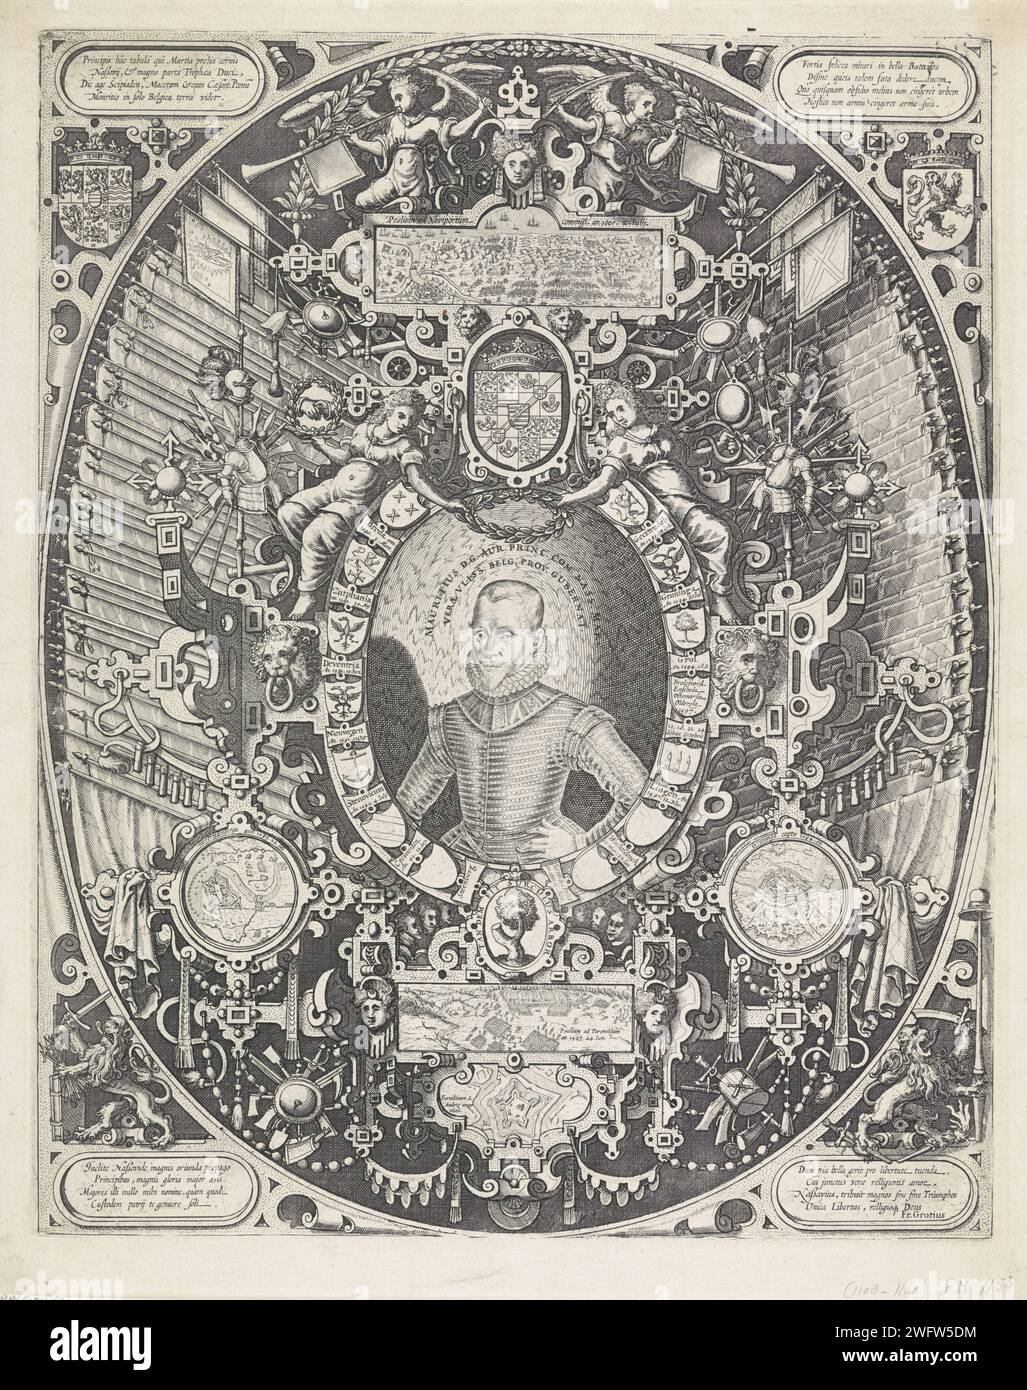 Ritratto di Maurizio, Principe d'Orange, Anonimo, 1600 - 1602 stampa Ritratto di Maurizio in un ovale formato da armi di luoghi conquistati. Eendracht e prudenza tengono una corona di alloro sopra la sua testa. In cinque piccole scene le conquiste di Geertruidenberg (1593), Groningen (1594), Turnhout (1597), Sint-Andries (1600) e Nieuwpoort (1600). Inoltre, il roll work, i trofei d'arma e gli striscioni spagnoli. In basso a sinistra e a destra la Hollandse Leeuw con un fascio di frecce a sinistra e una spada e una lancia con un cappello per la libertà a destra. Anche le armi del principe e degli Stati generali. FO Foto Stock